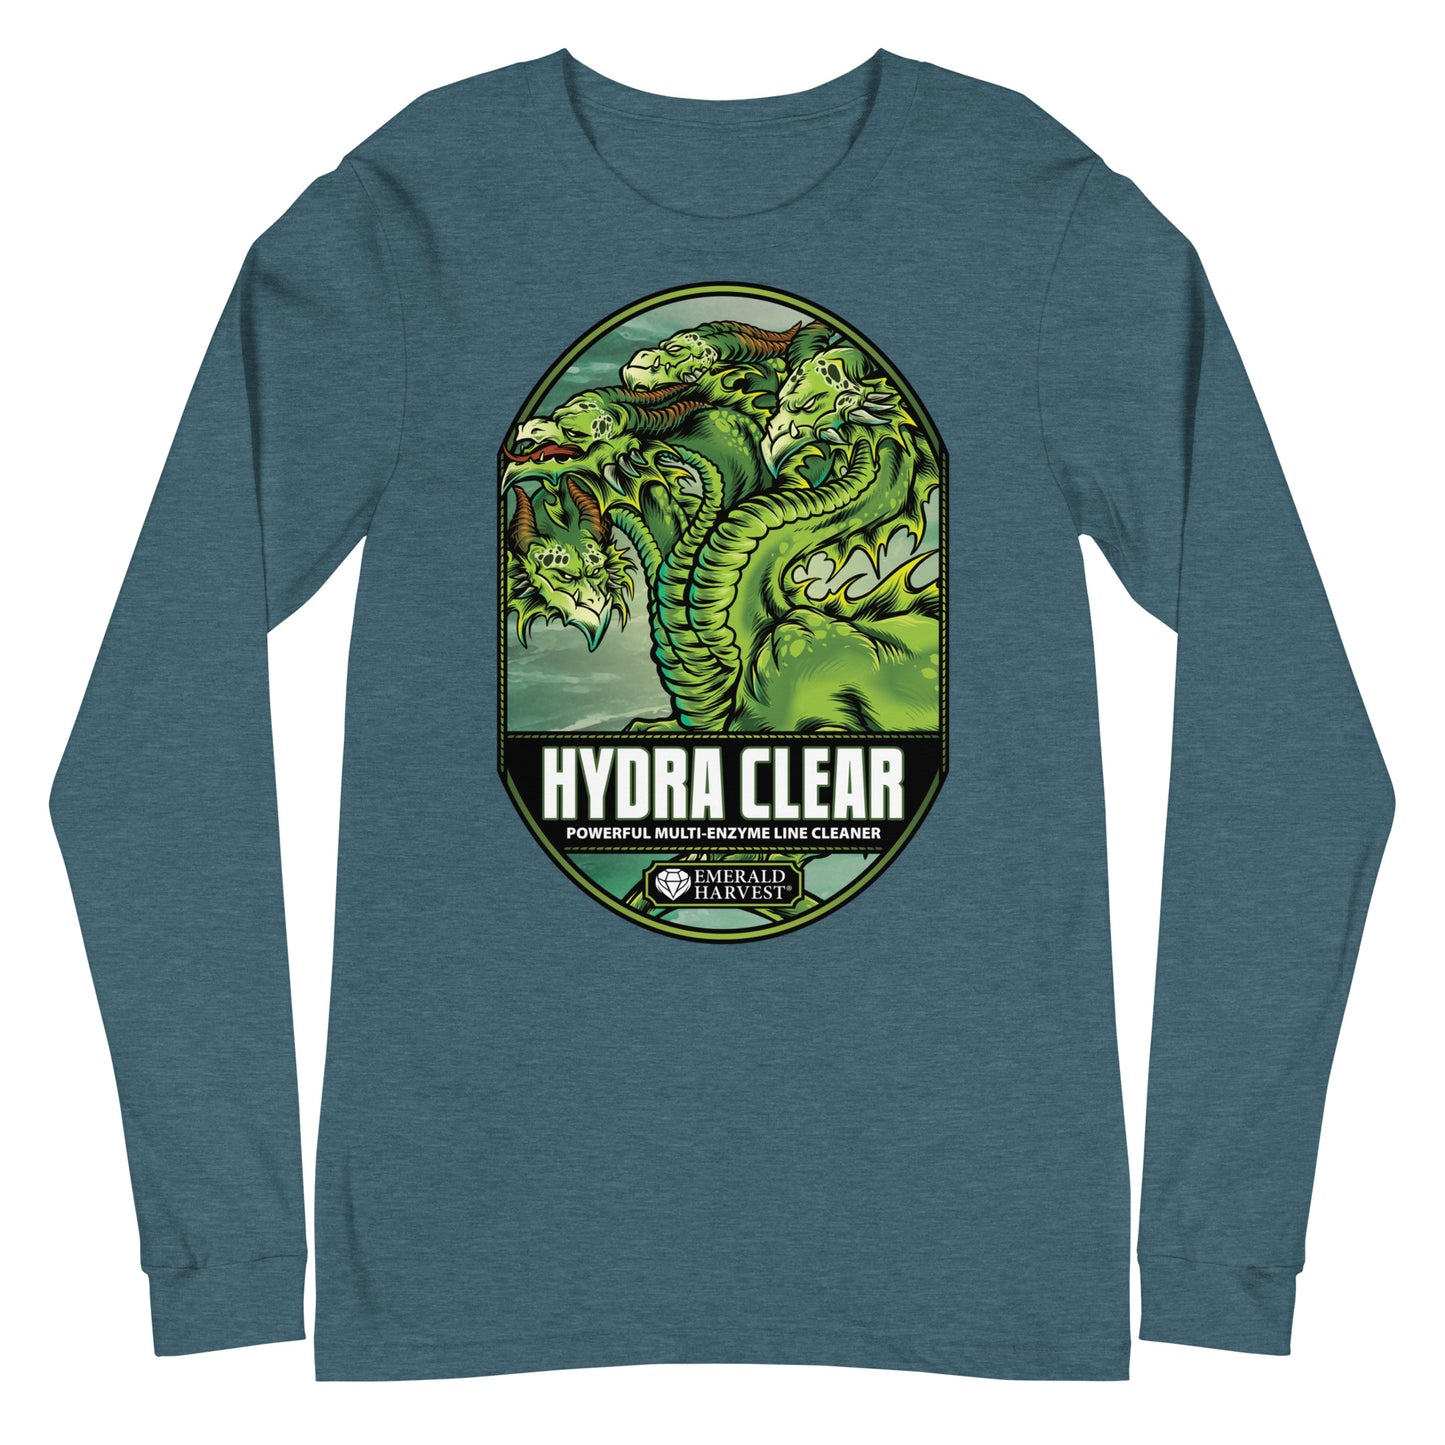 Hydra Clear Unisex Long-Sleeve Tee